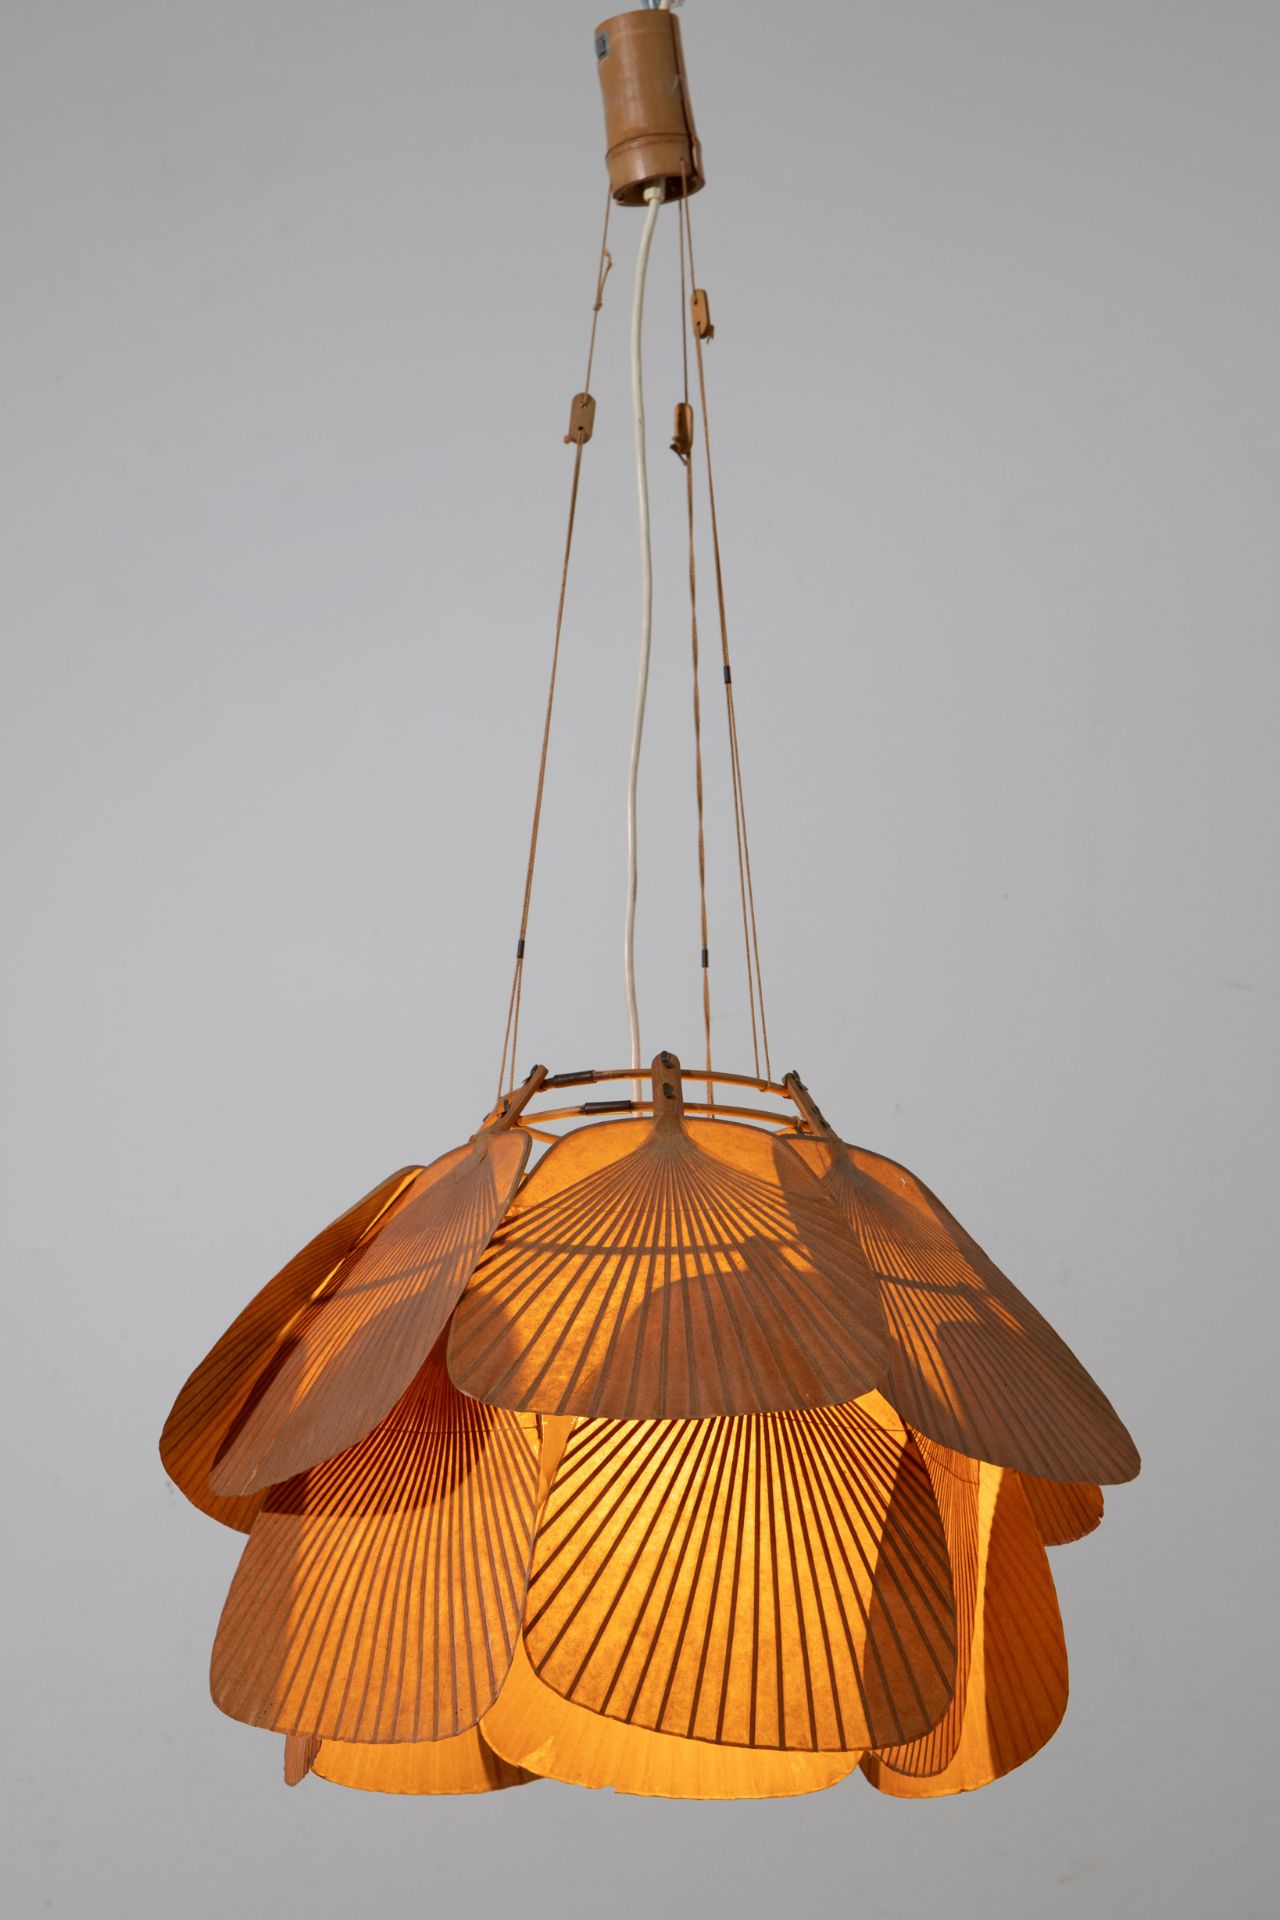 Ingo Maurer, Design M, Pendant lamp model Uchiwa